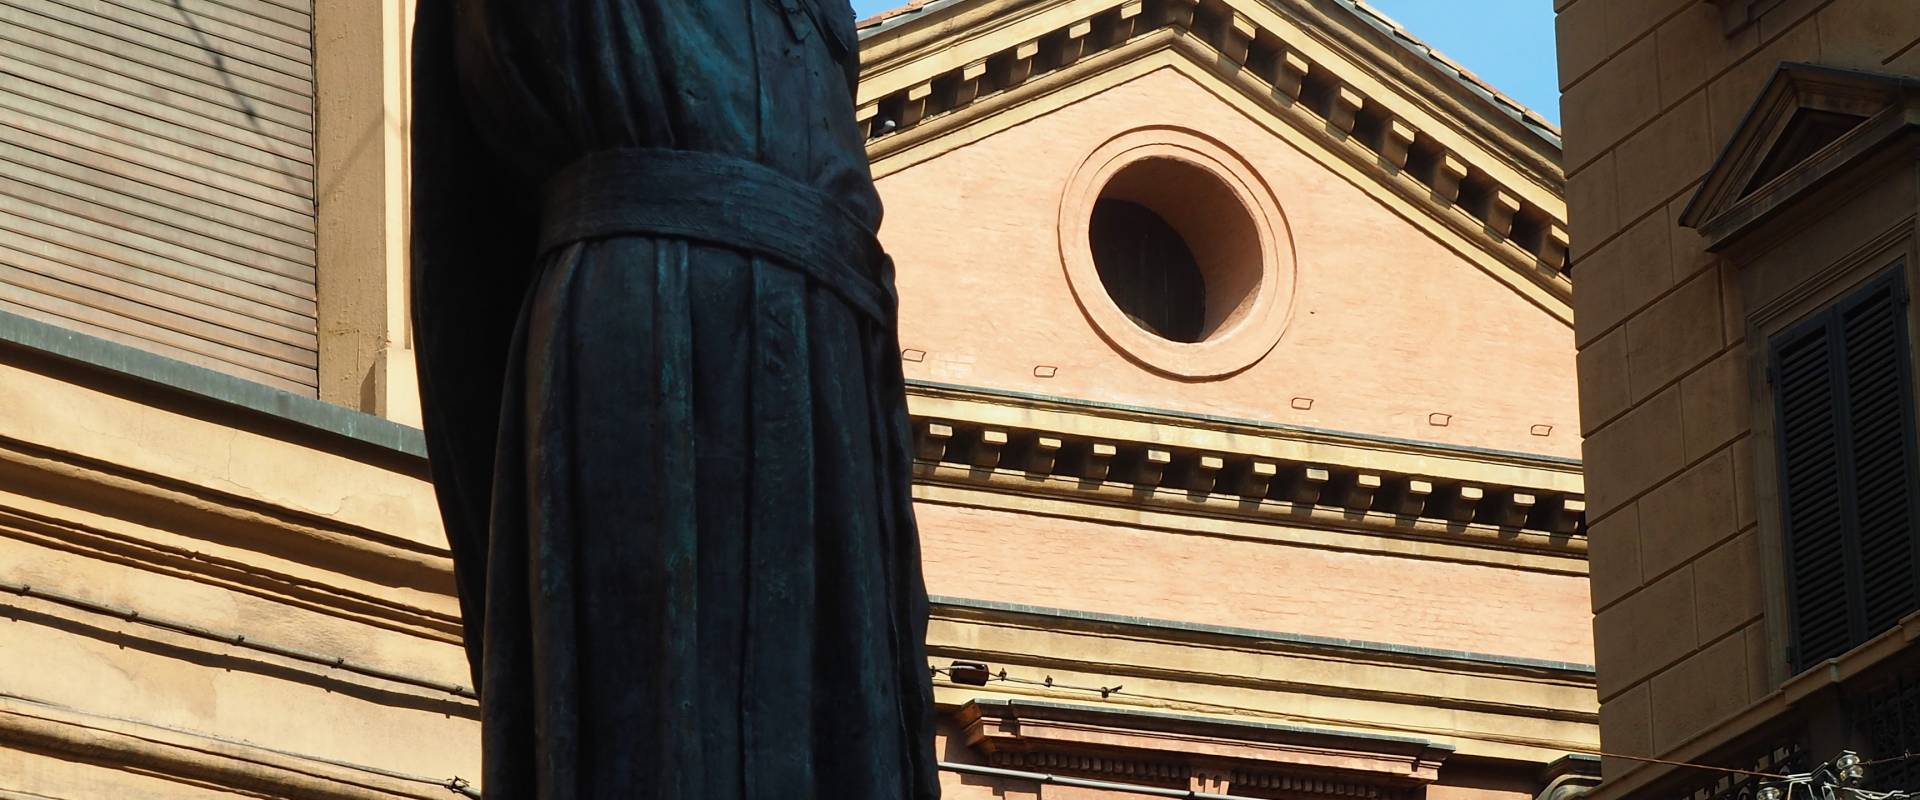 Statua di Ugo Bassi con chiesa dei Santi Gregorio e Siro foto di MarkPagl